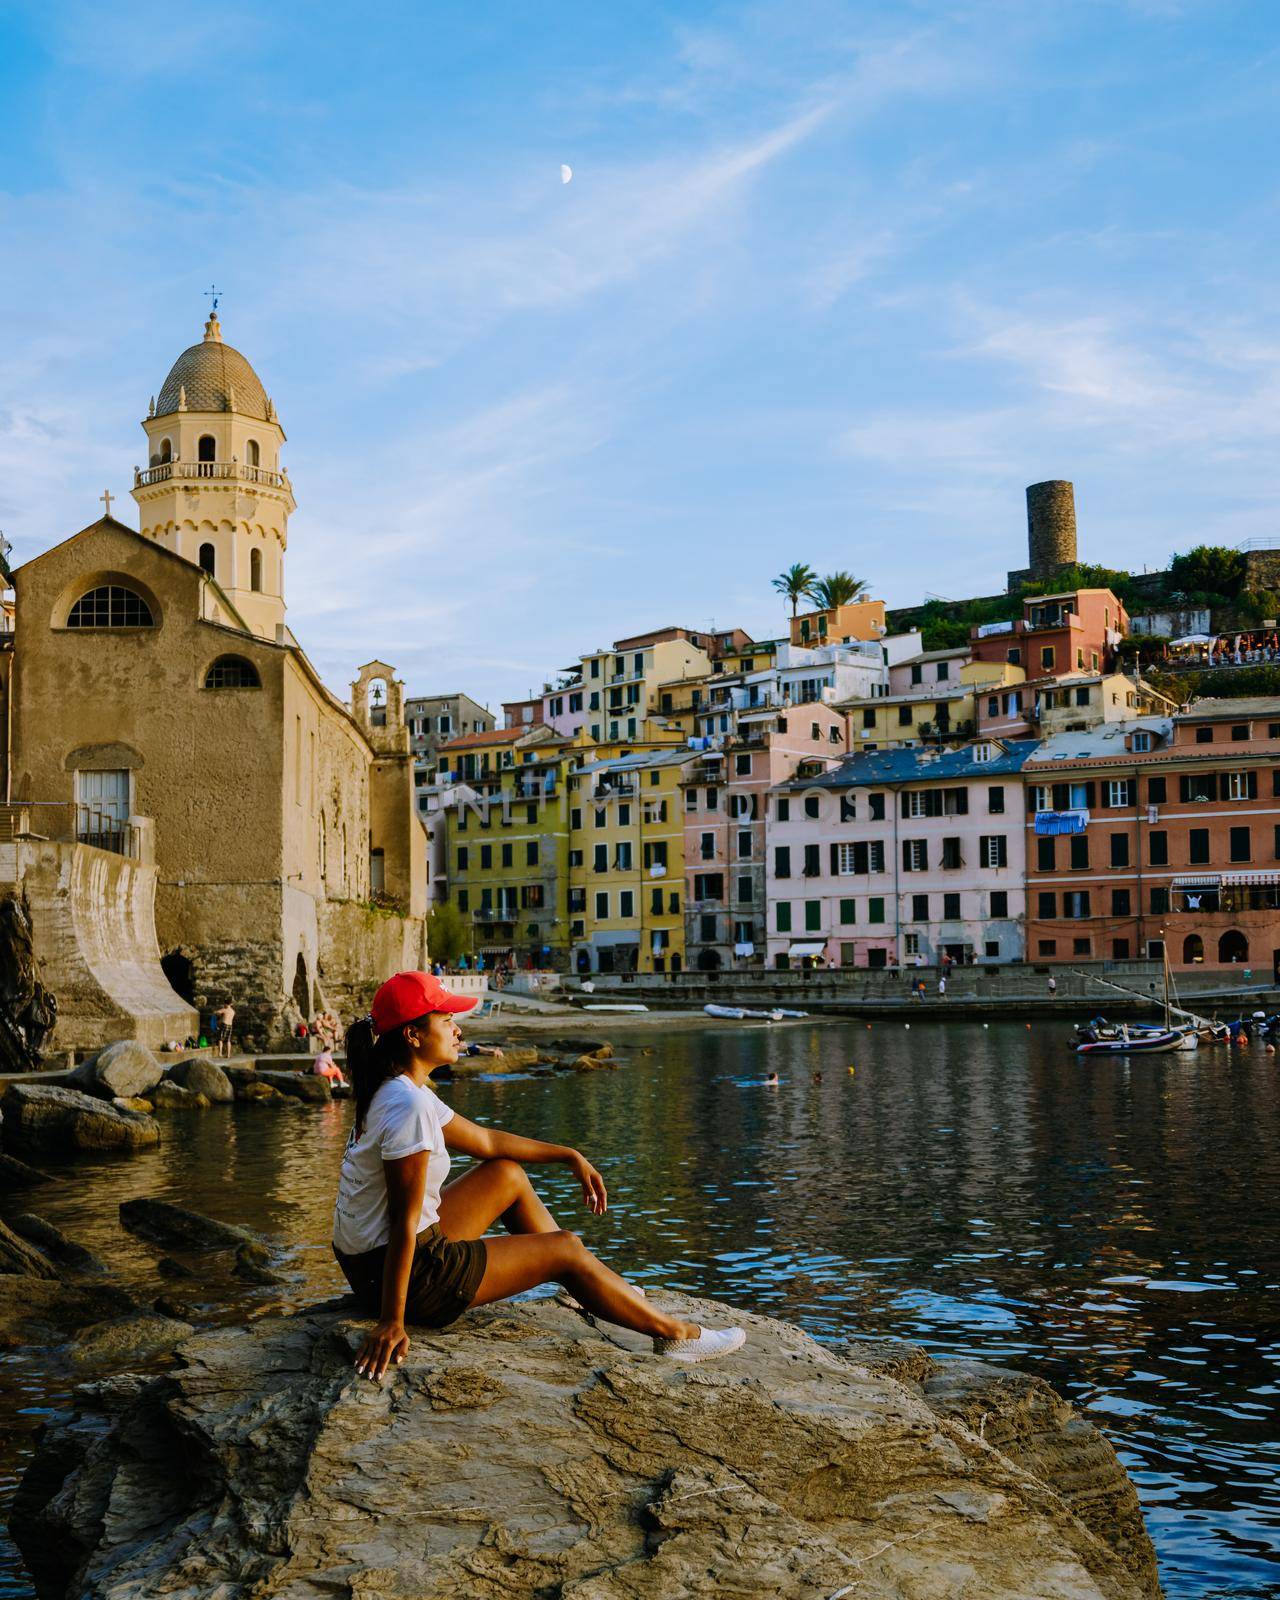 Picturesque coastal village of Vernazza, Cinque Terre, Italy. by fokkebok